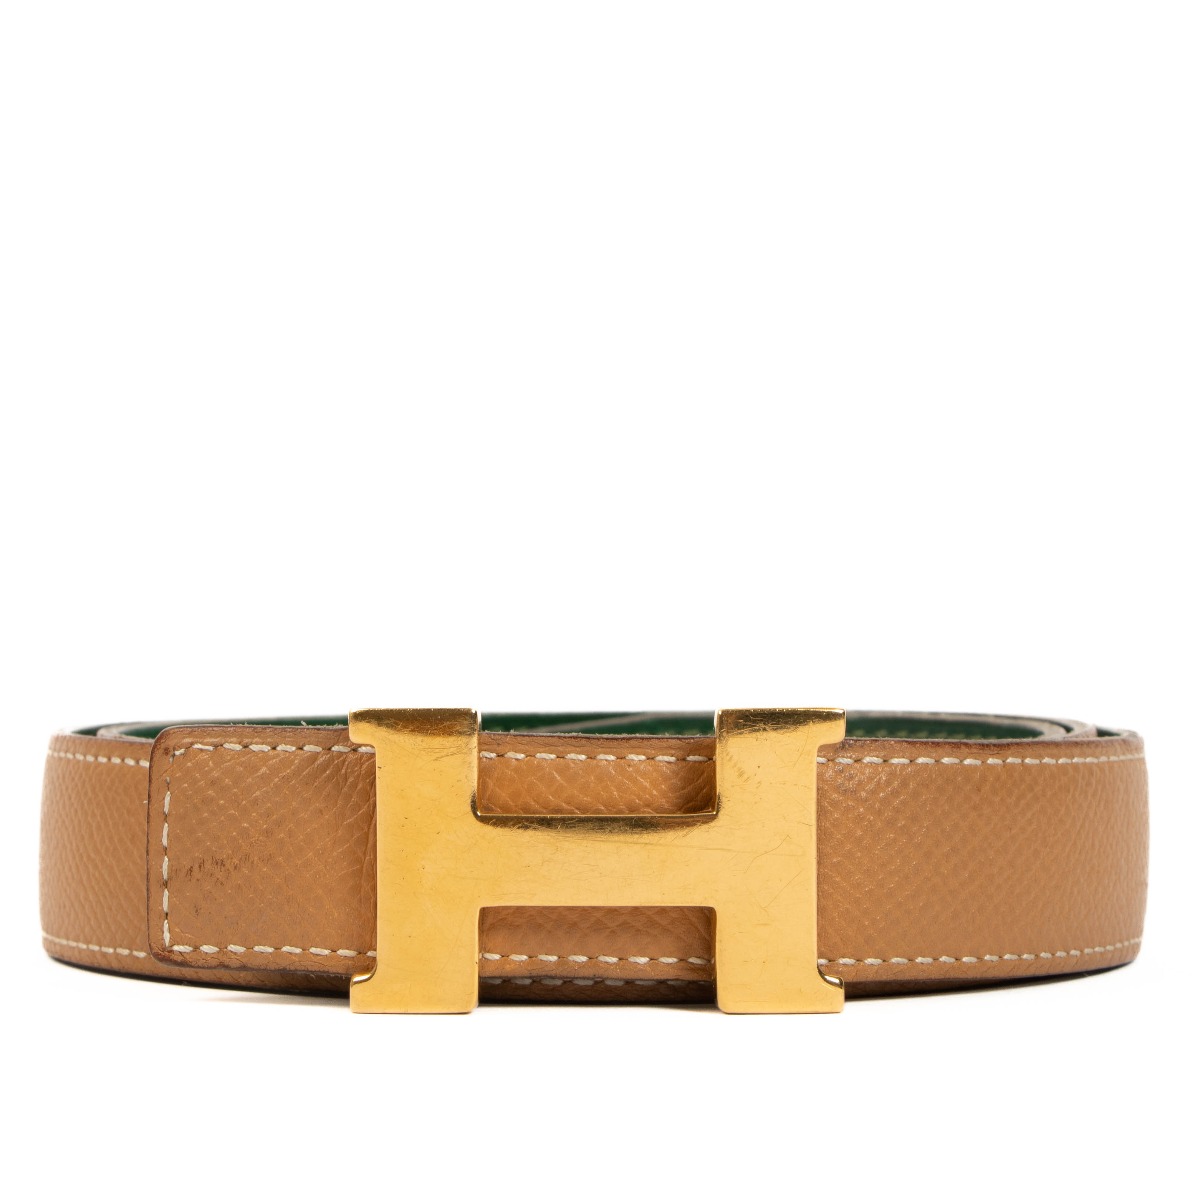 Shop HERMES CONSTANCE Mini Constance Belt Buckle & Reversible Leather Strap  24 Mm (Mini Constance belt) by Mikrie